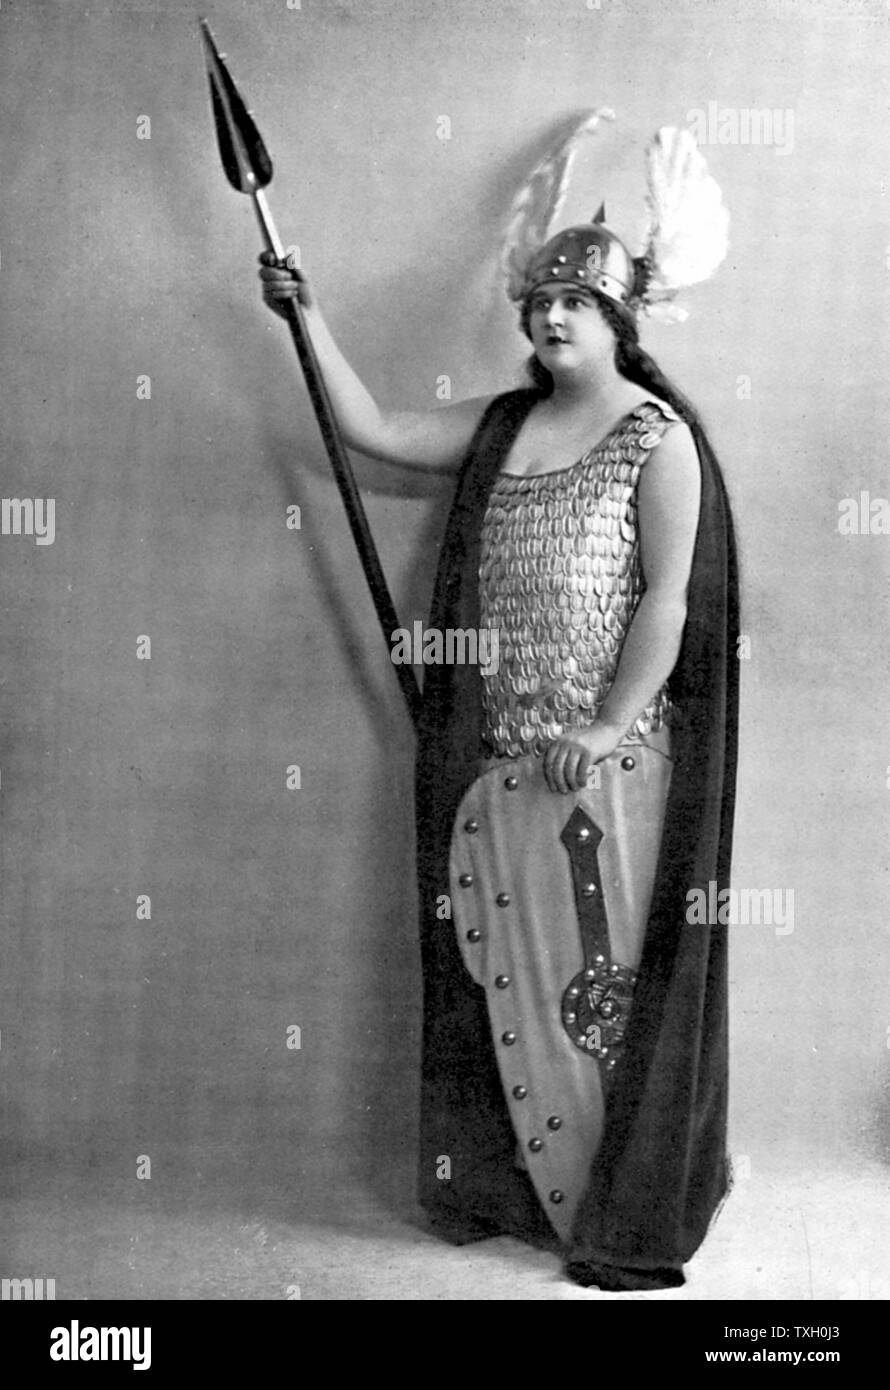 Florence Austral (1894-1968) soprano australienne spécialisée dans les rôles wagnériens ; vrai nom Wilson. Comme Austral Brunnhilde dans Wagner 'Die Walkure', dans laquelle elle fait ses débuts à Covent Garden en 1922 Banque D'Images